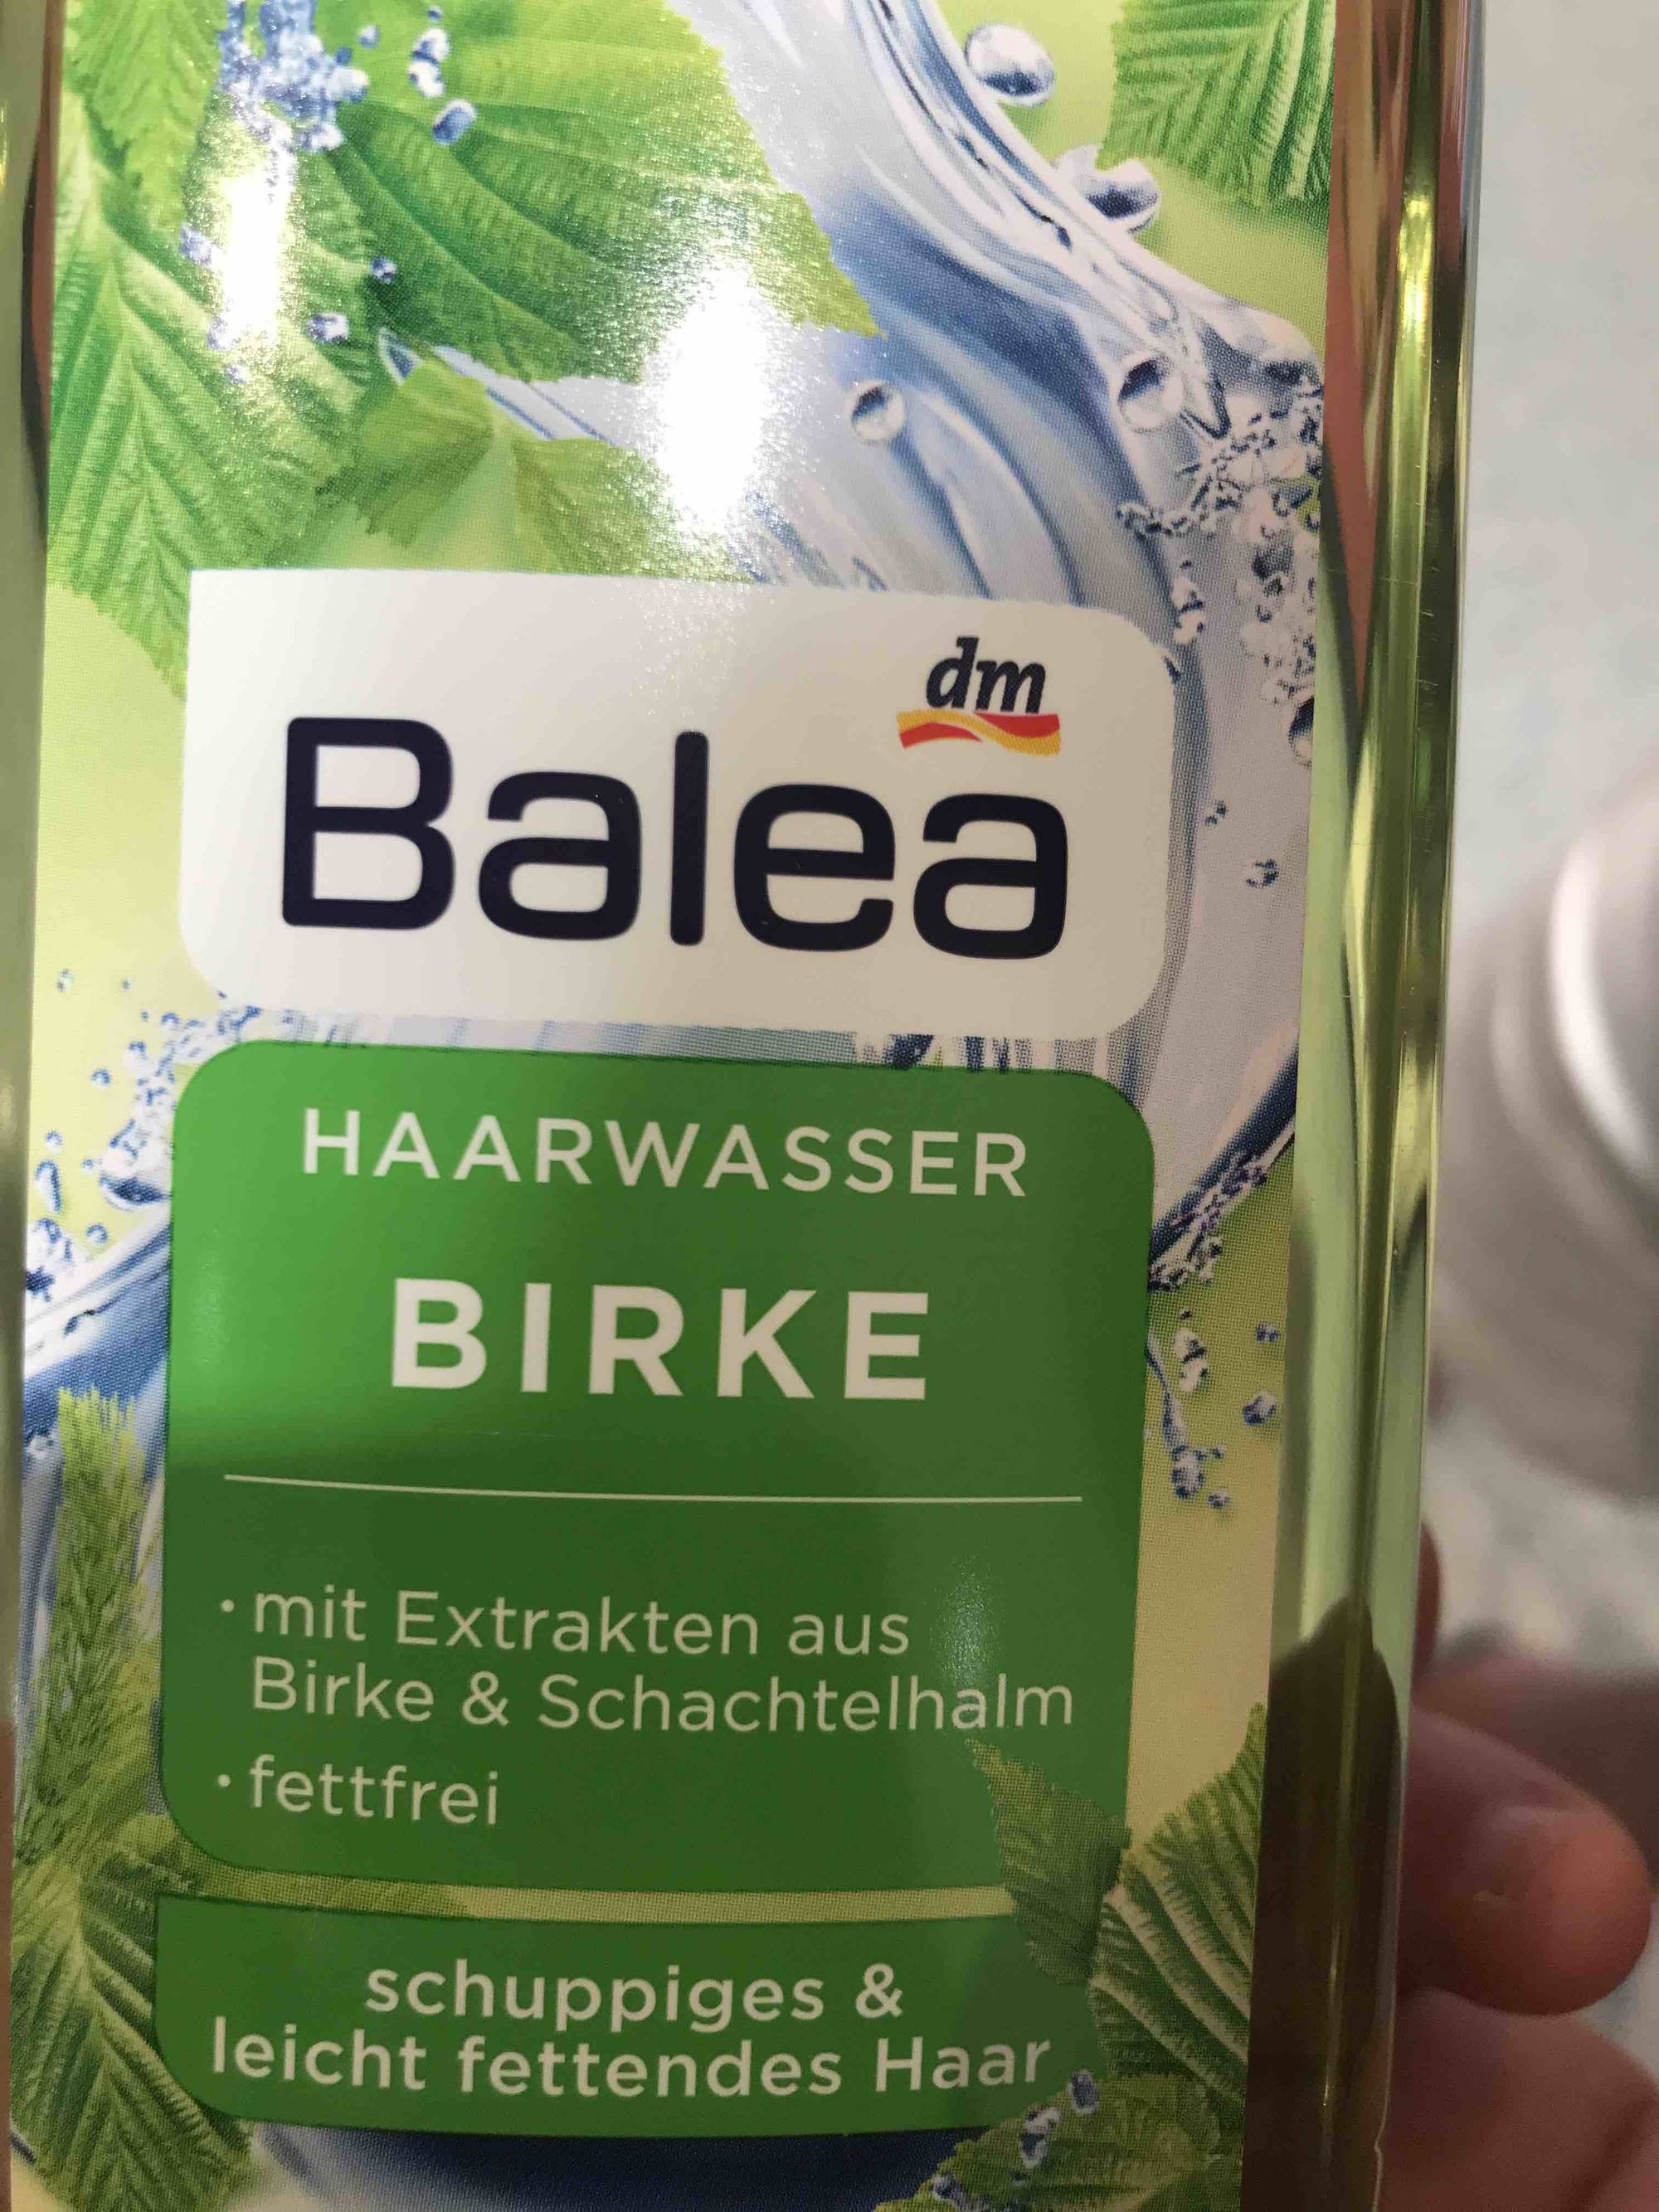 BALEA - Birke - Haarwasser